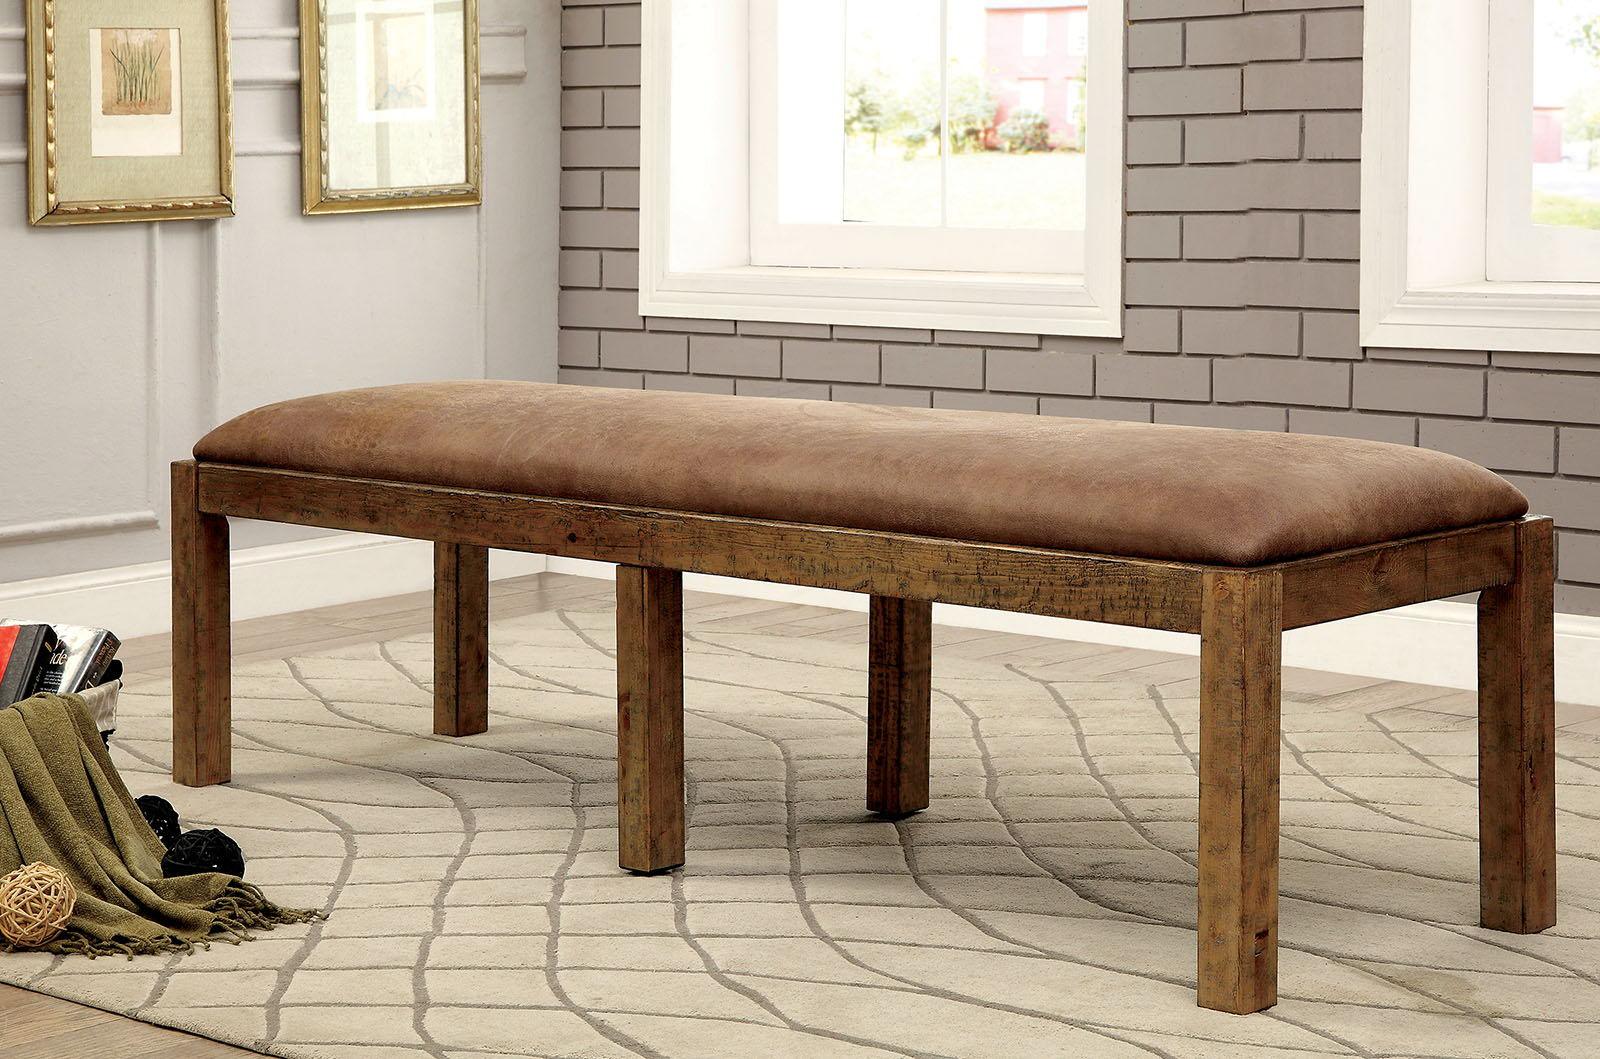 Furniture of America - Gianna Fabric Bench - Rustic Oak / Brown - 5th Avenue Furniture